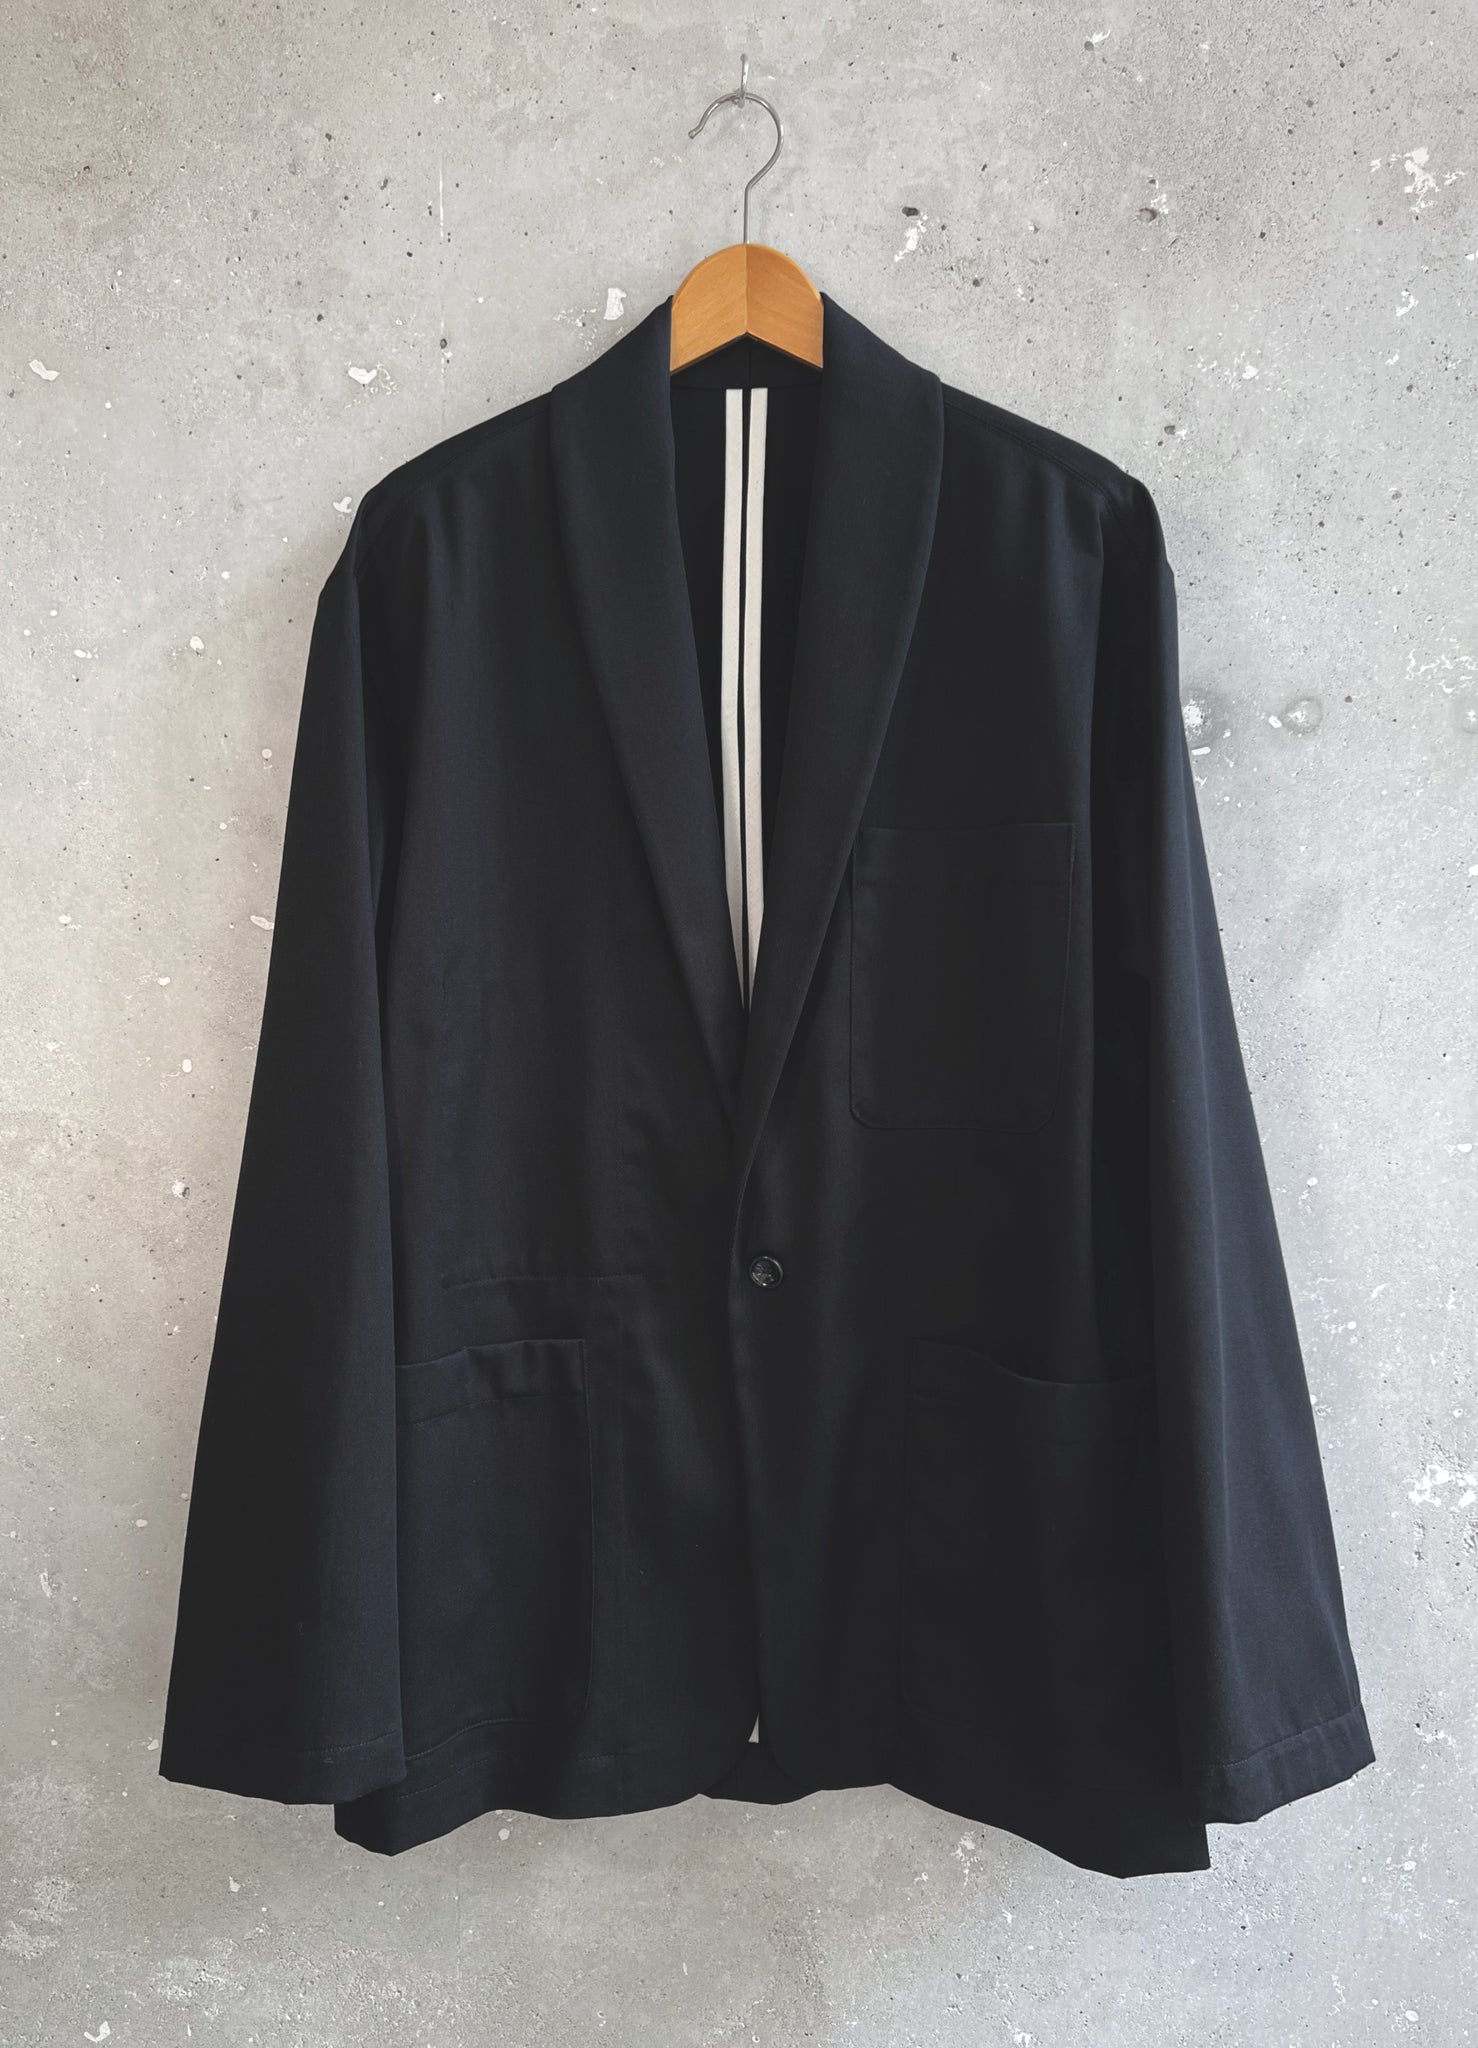 Soft blazer black cotton twill